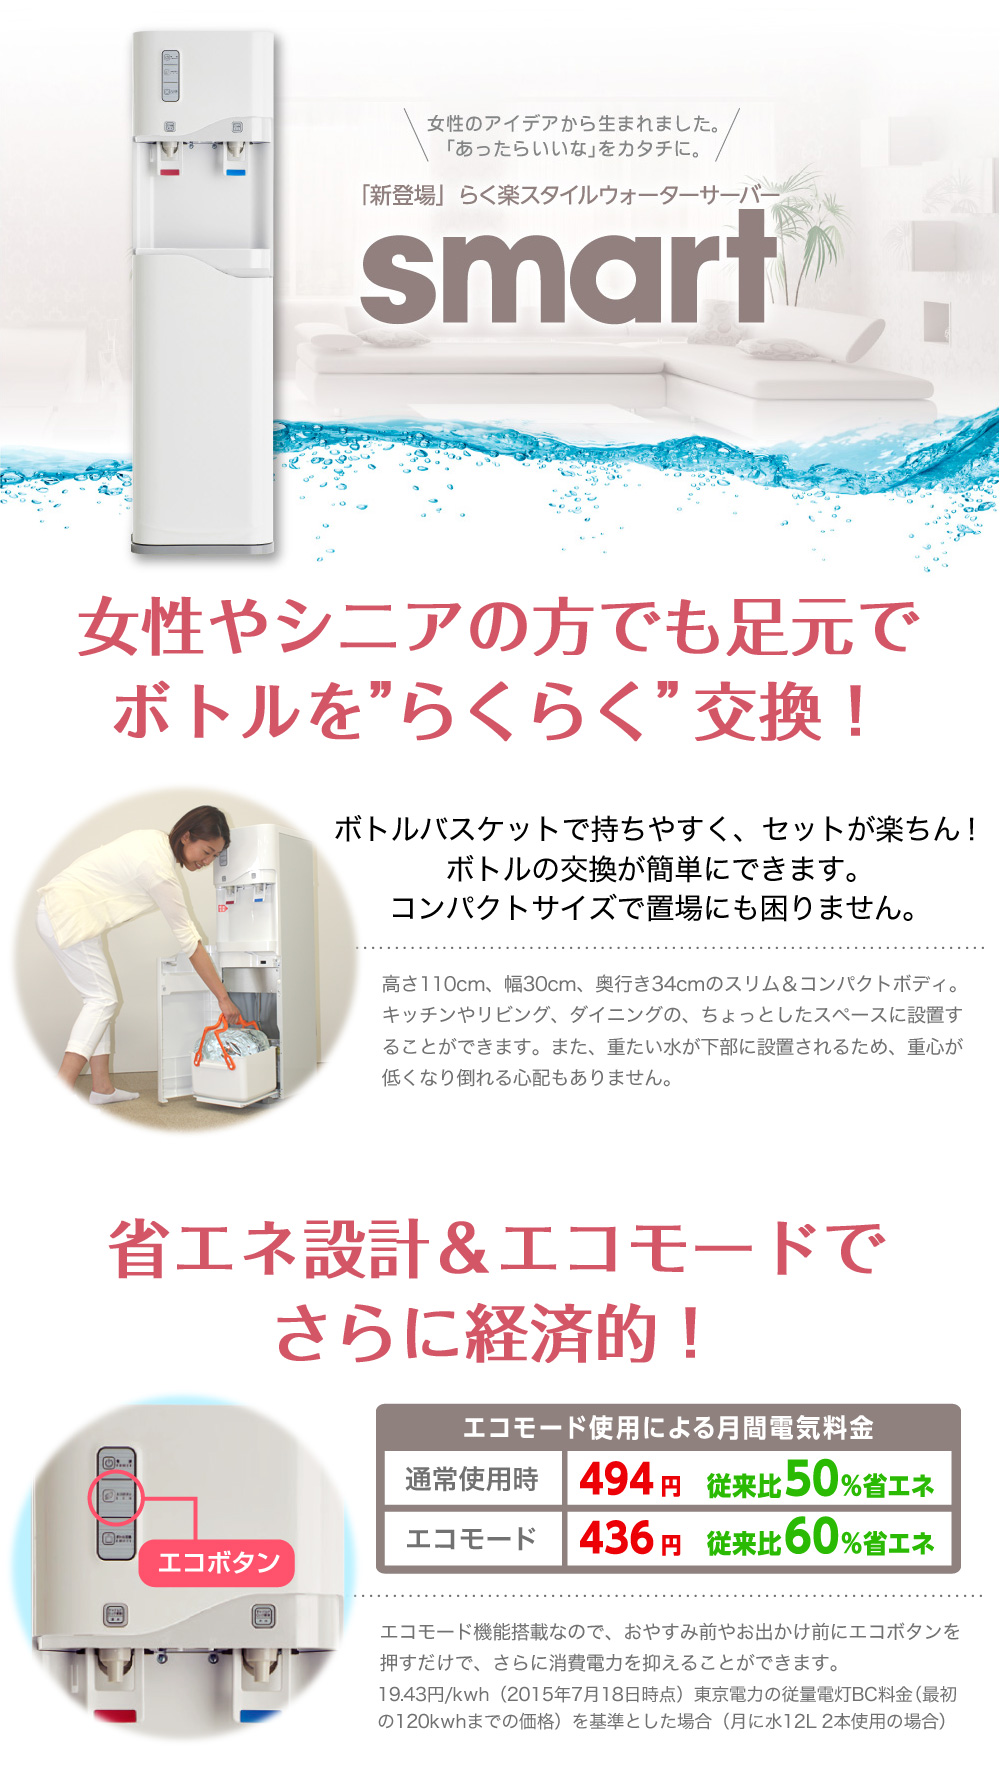 大雪な水.jp - 鎌田醤油株式会社